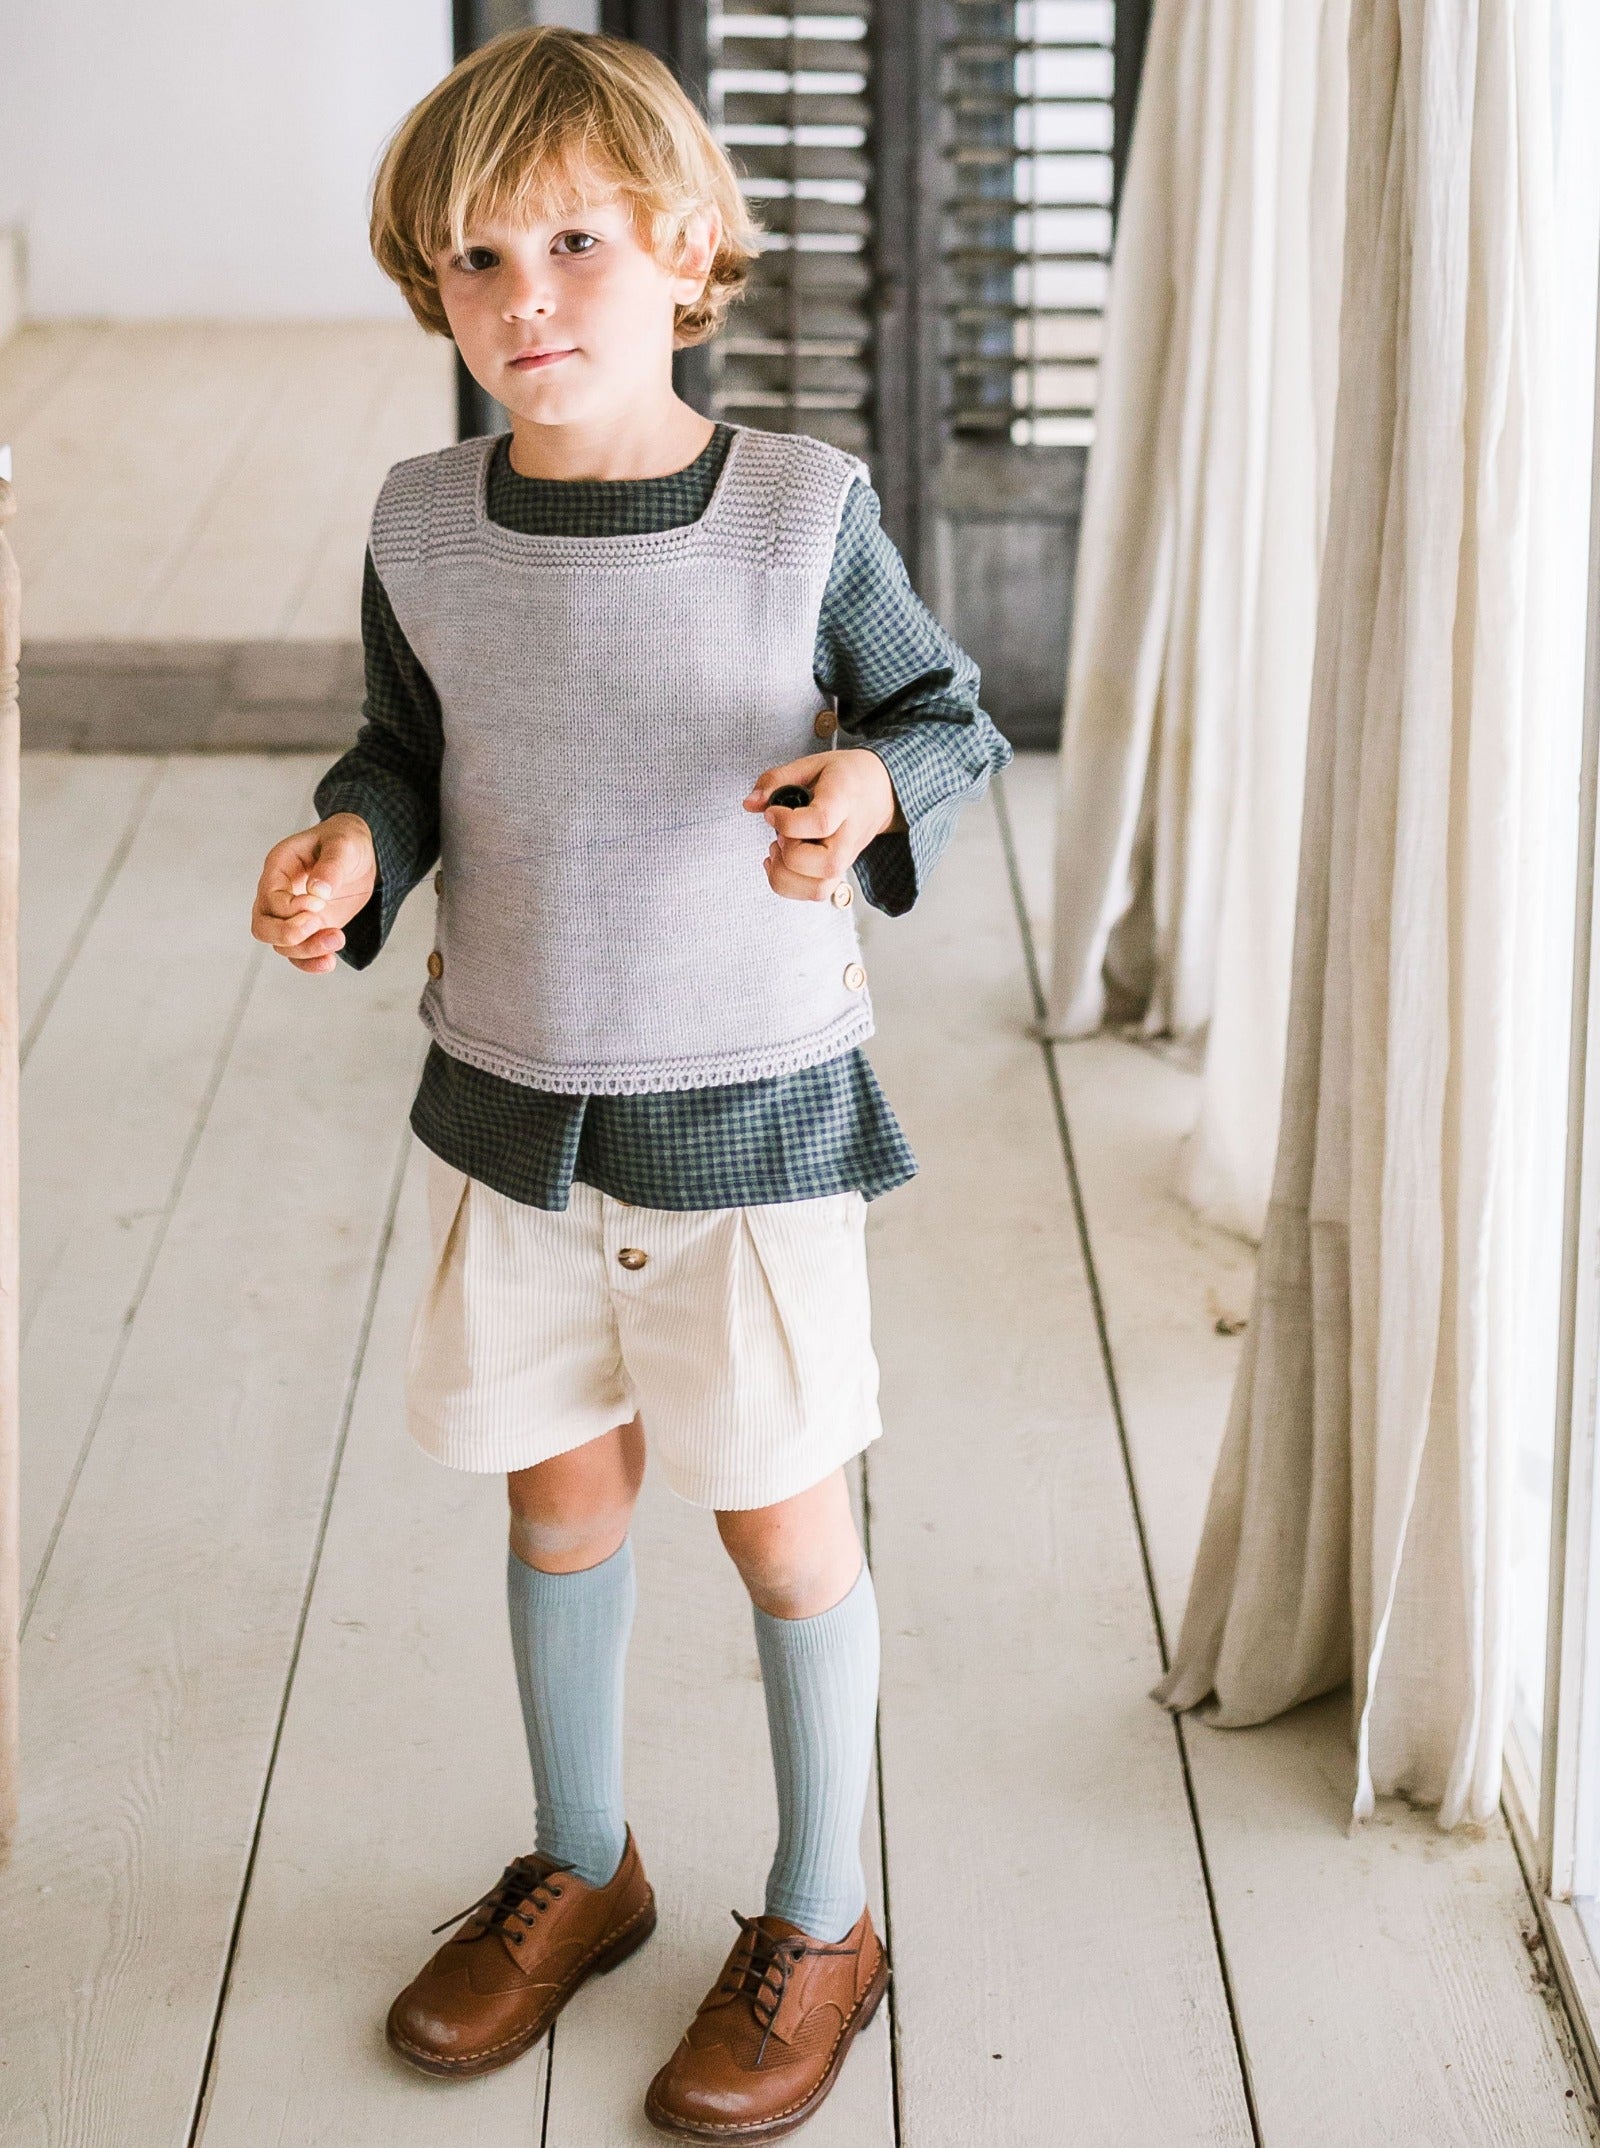 Chaussettes enfant laine hautes et côtelées – Les Enfantines